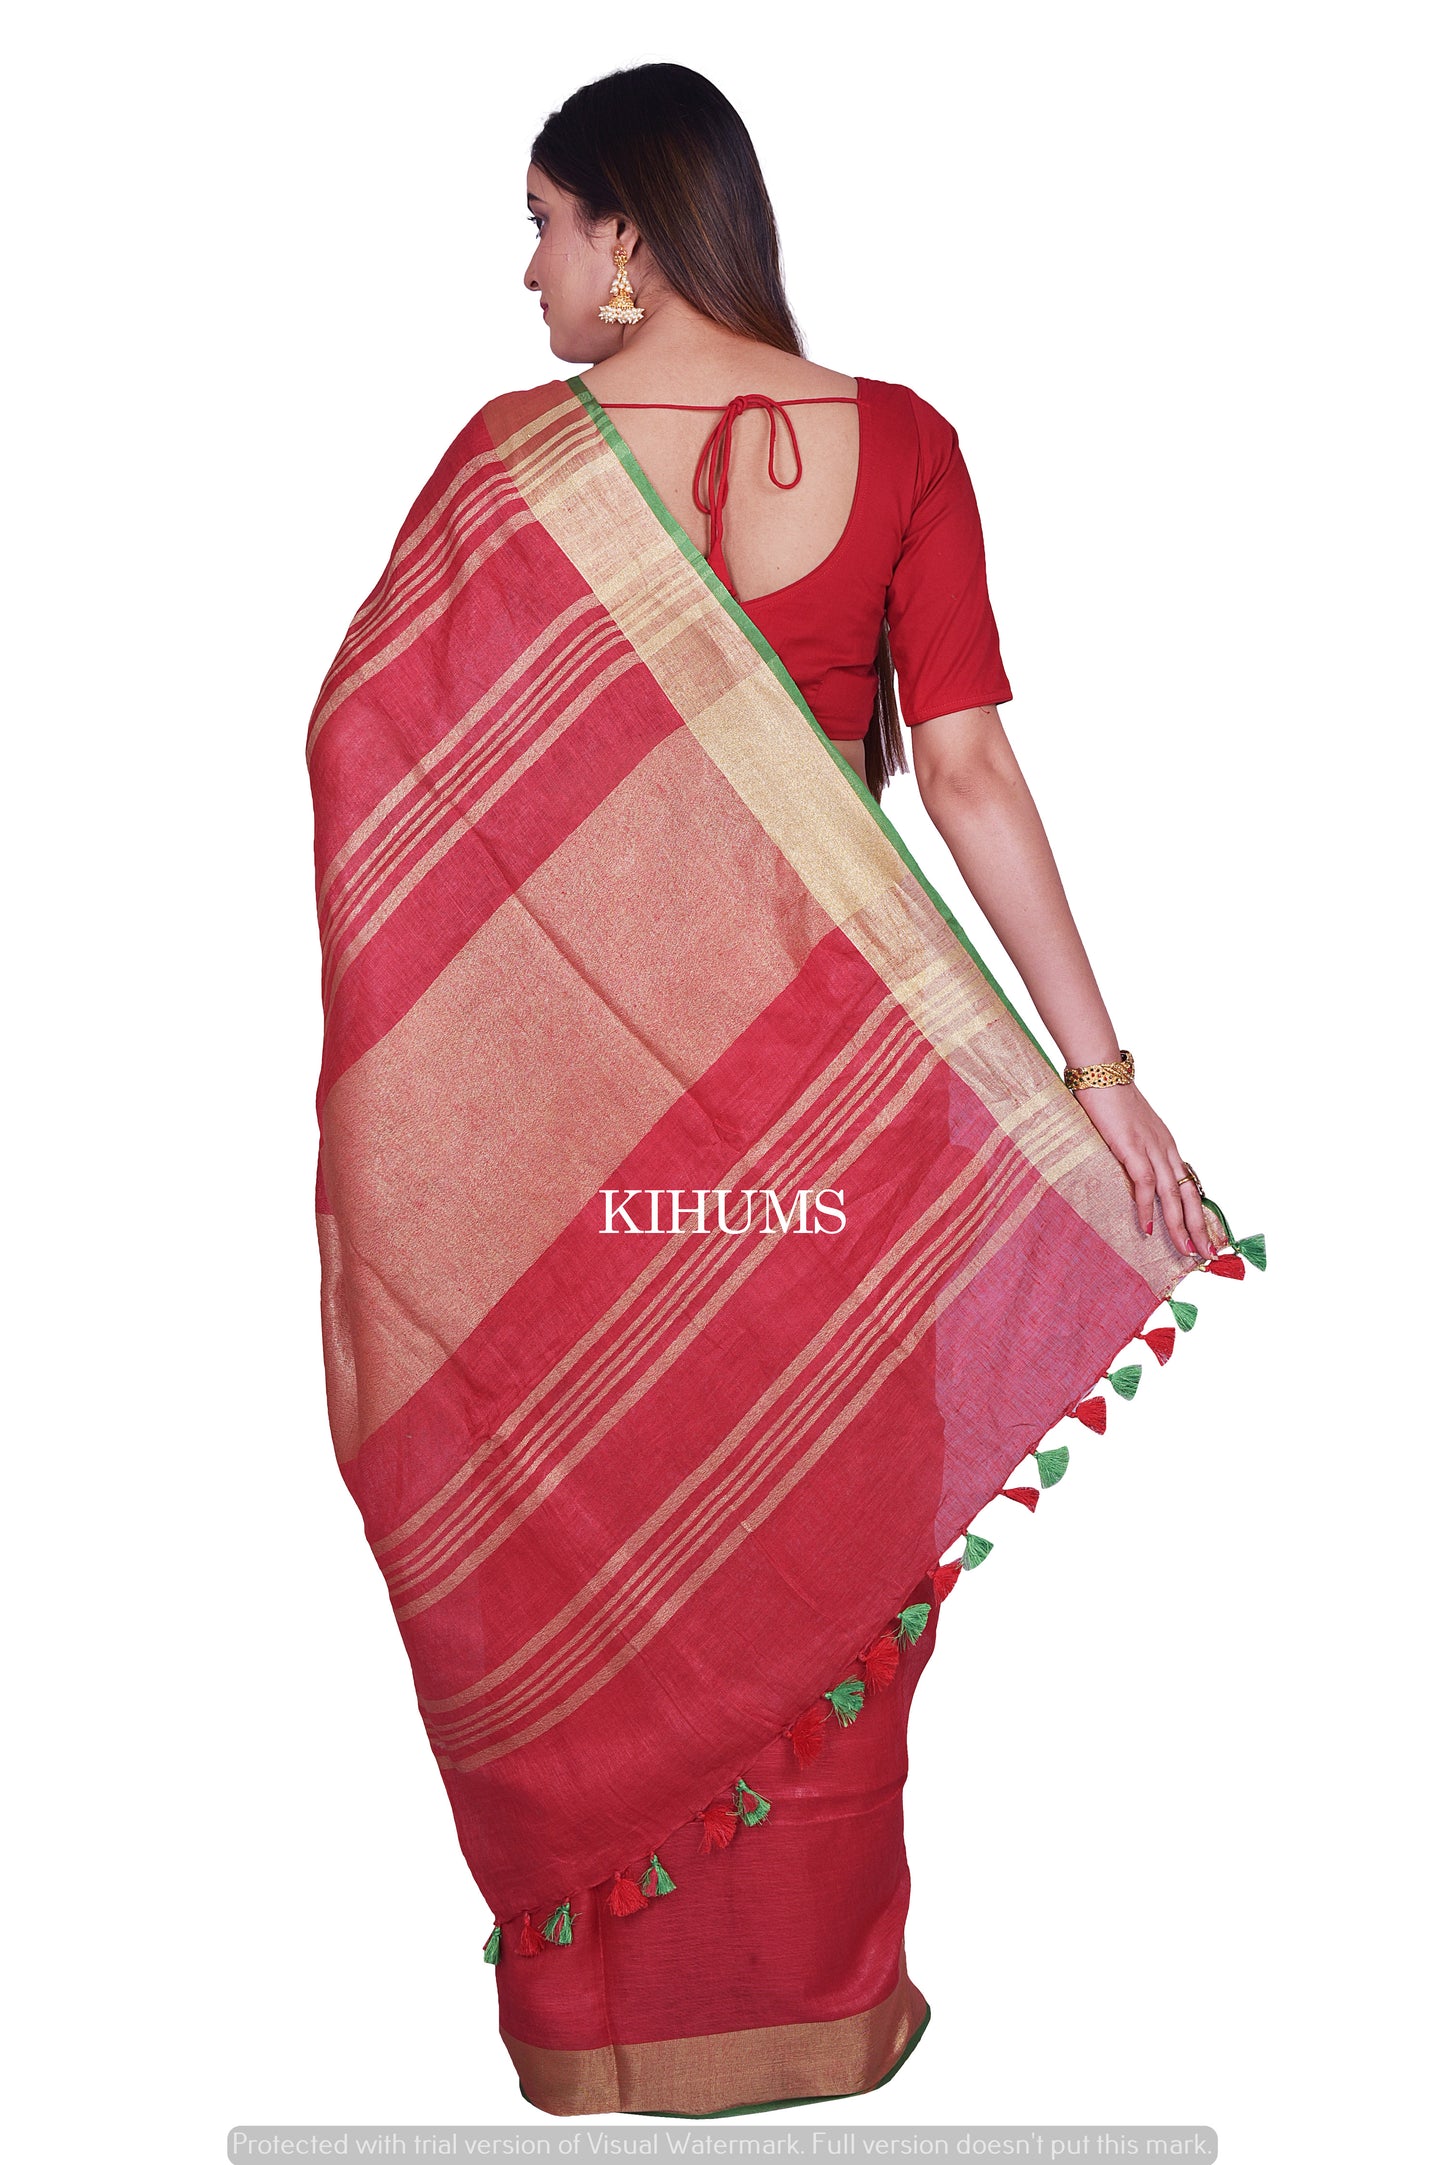 Red Shade Handwoven Linen Saree | Contrast Blouse | KIHUMS Saree